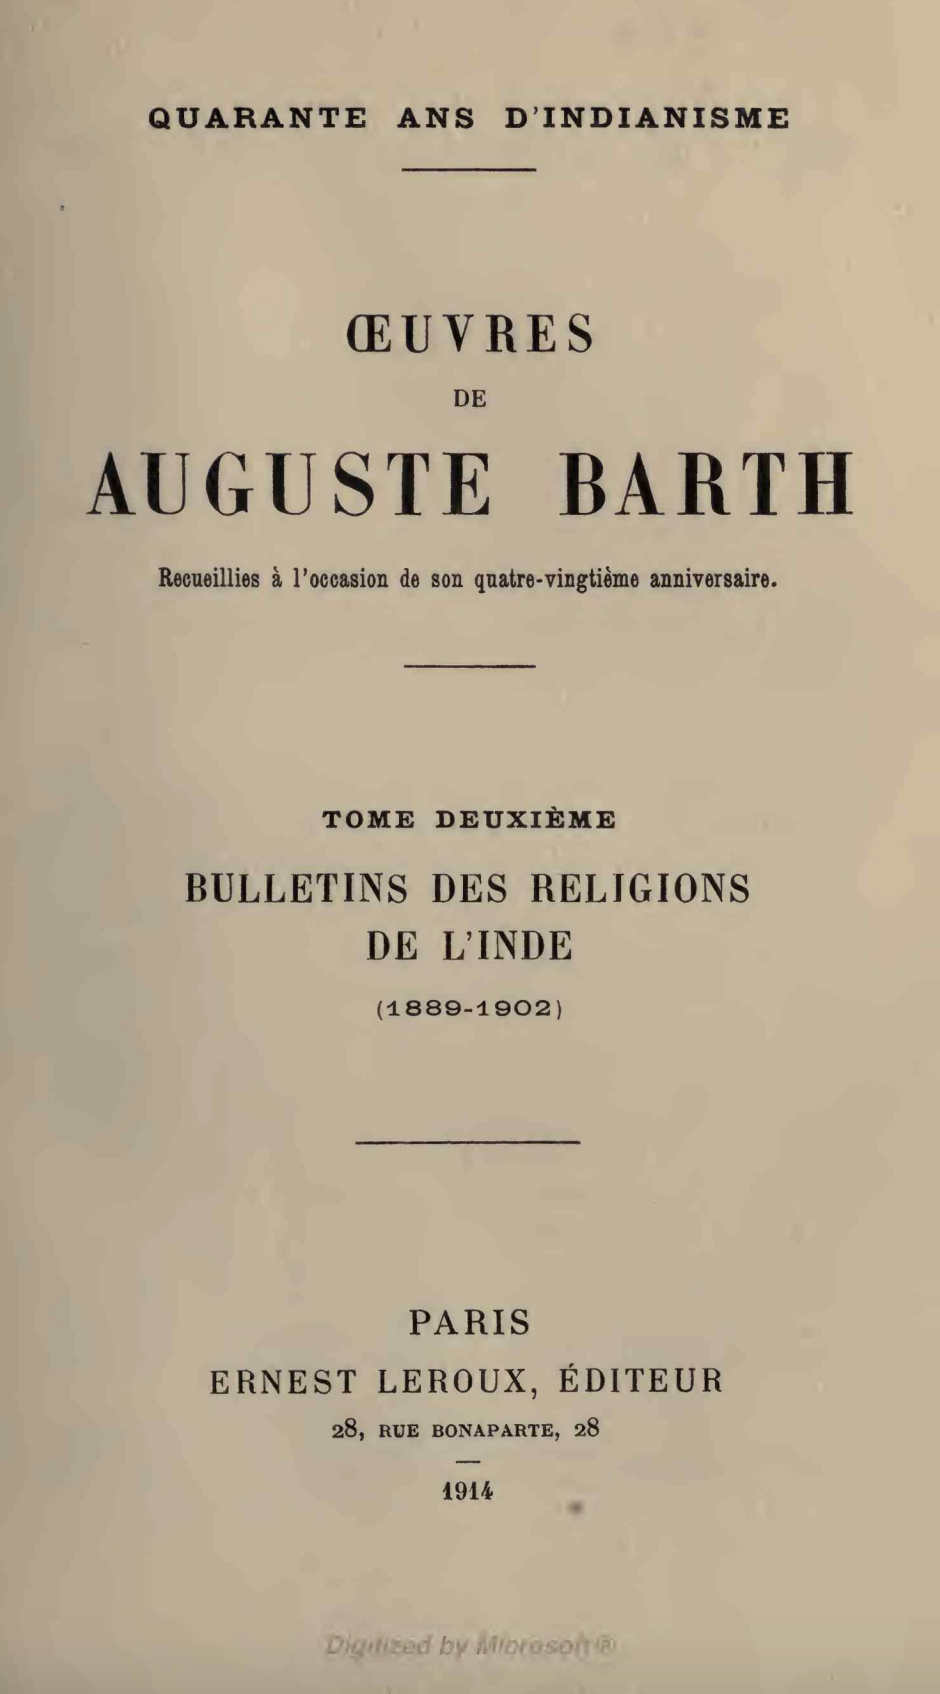 Œuvres de Auguste Barth Vol 2-front.jpg